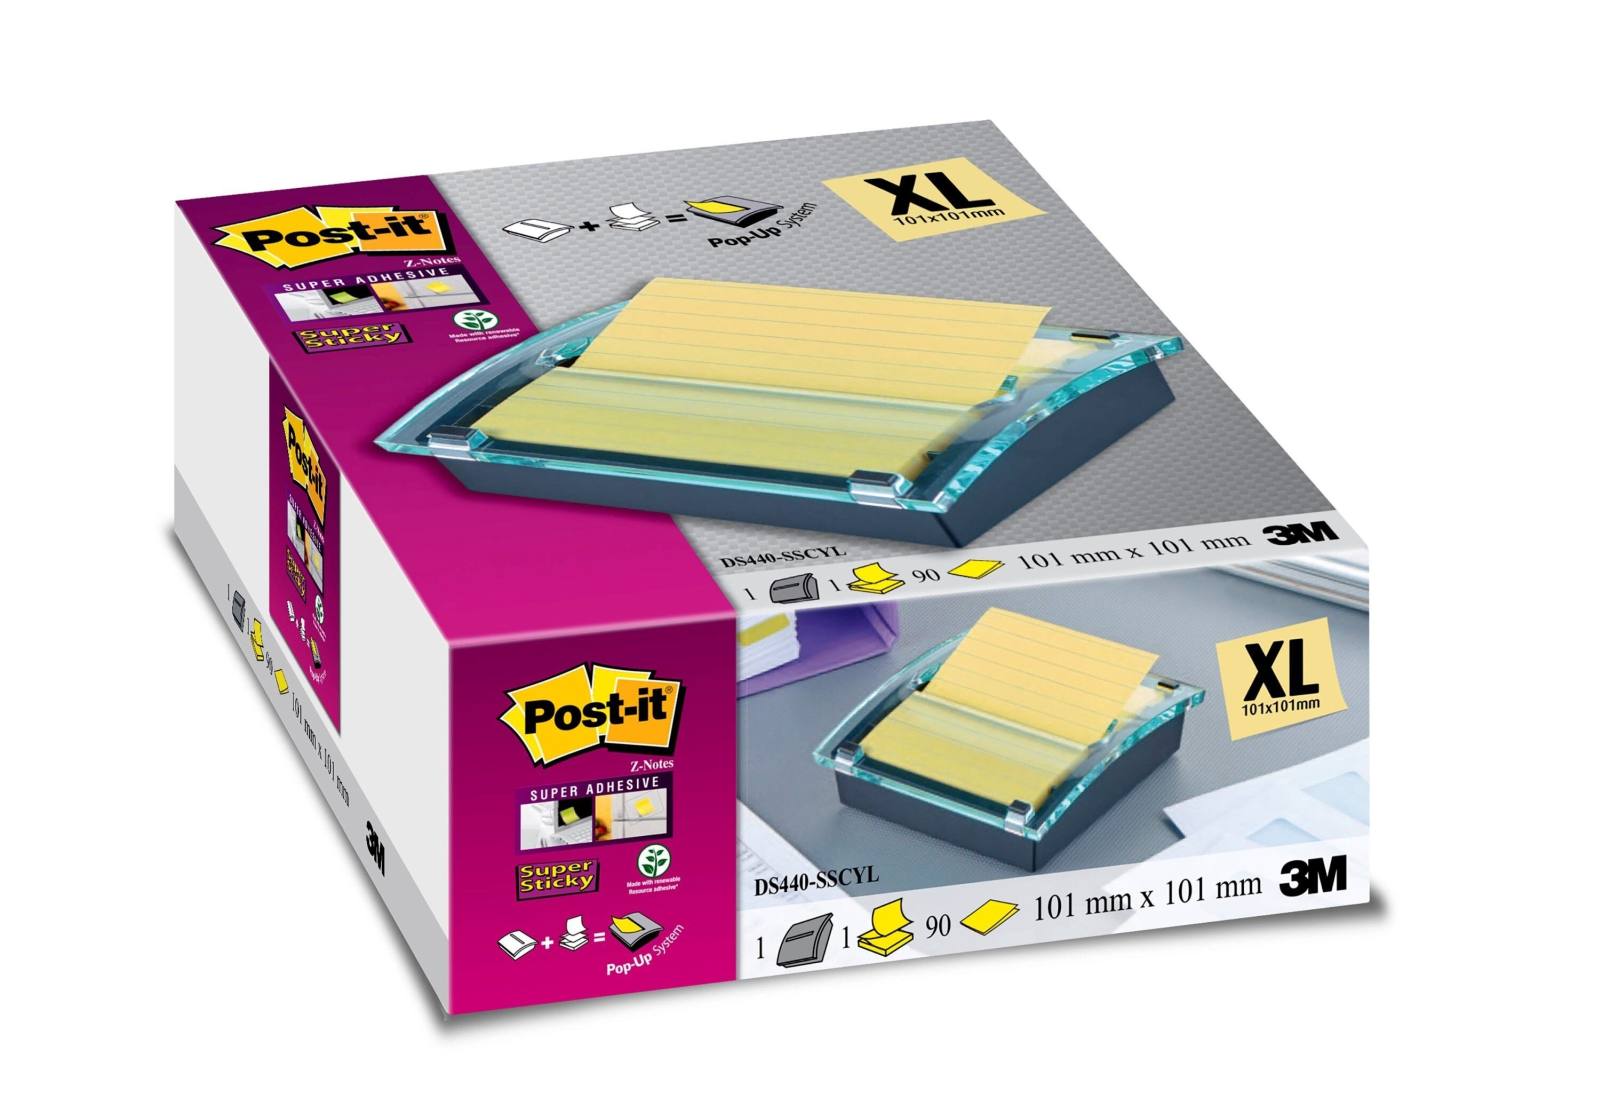 3M Post-it Super Sticky Z-Notes Dispenser DS440SCY, 1 dispensador de Z-Notes, negro/transparente incl. 1 bloc de Post-it Super Sticky Z-Notes con 90 hojas, amarillo, rayado, 101 mm x 101 mm, certificado PEFC